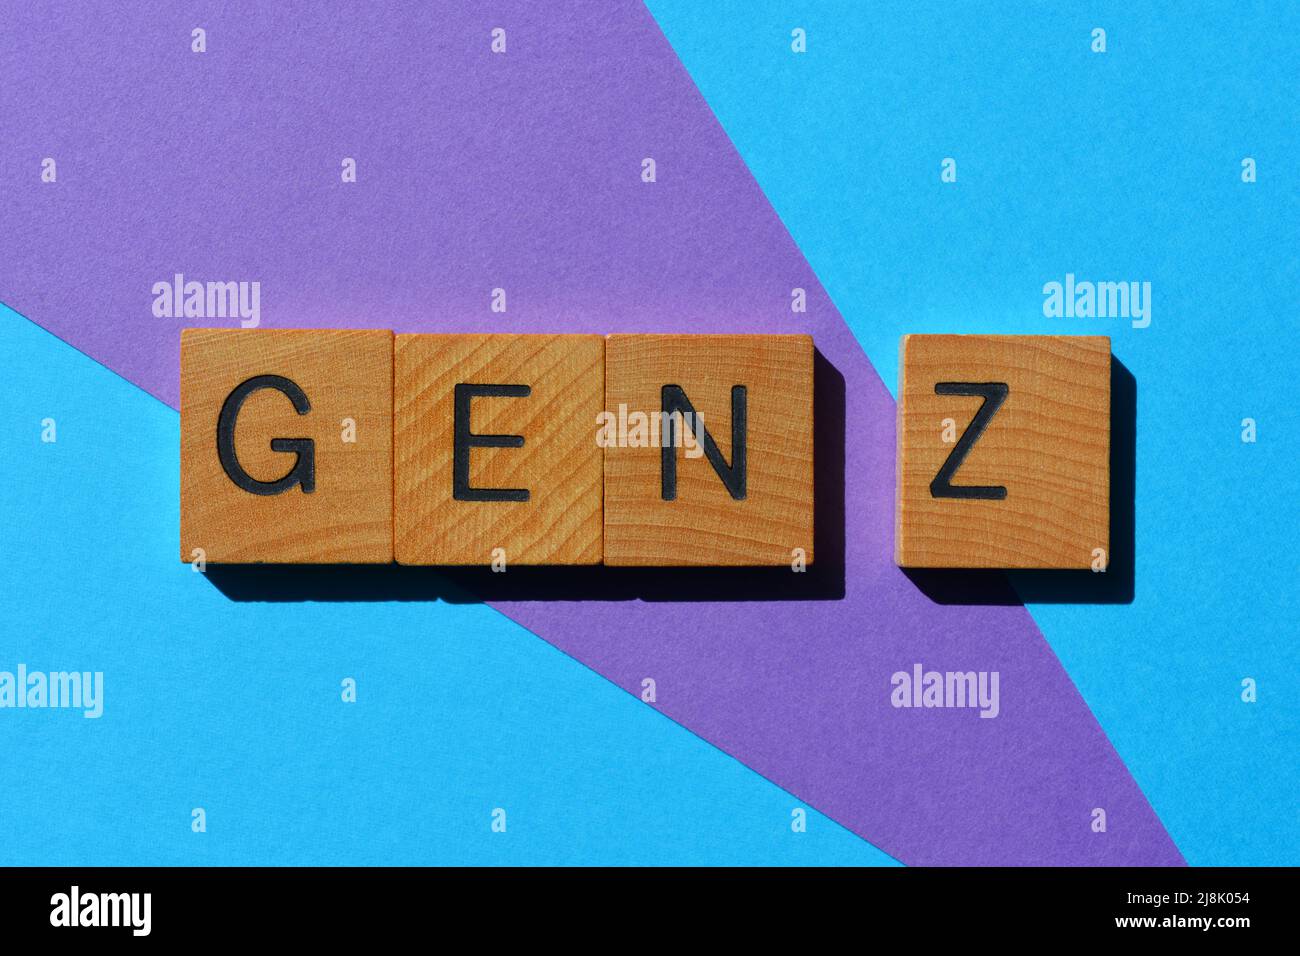 Gen Z, abbreviazione di Generation Z persone nate tra il 1995 e il 2010, parola in alfabeto di legno isolato su sfondo Foto Stock